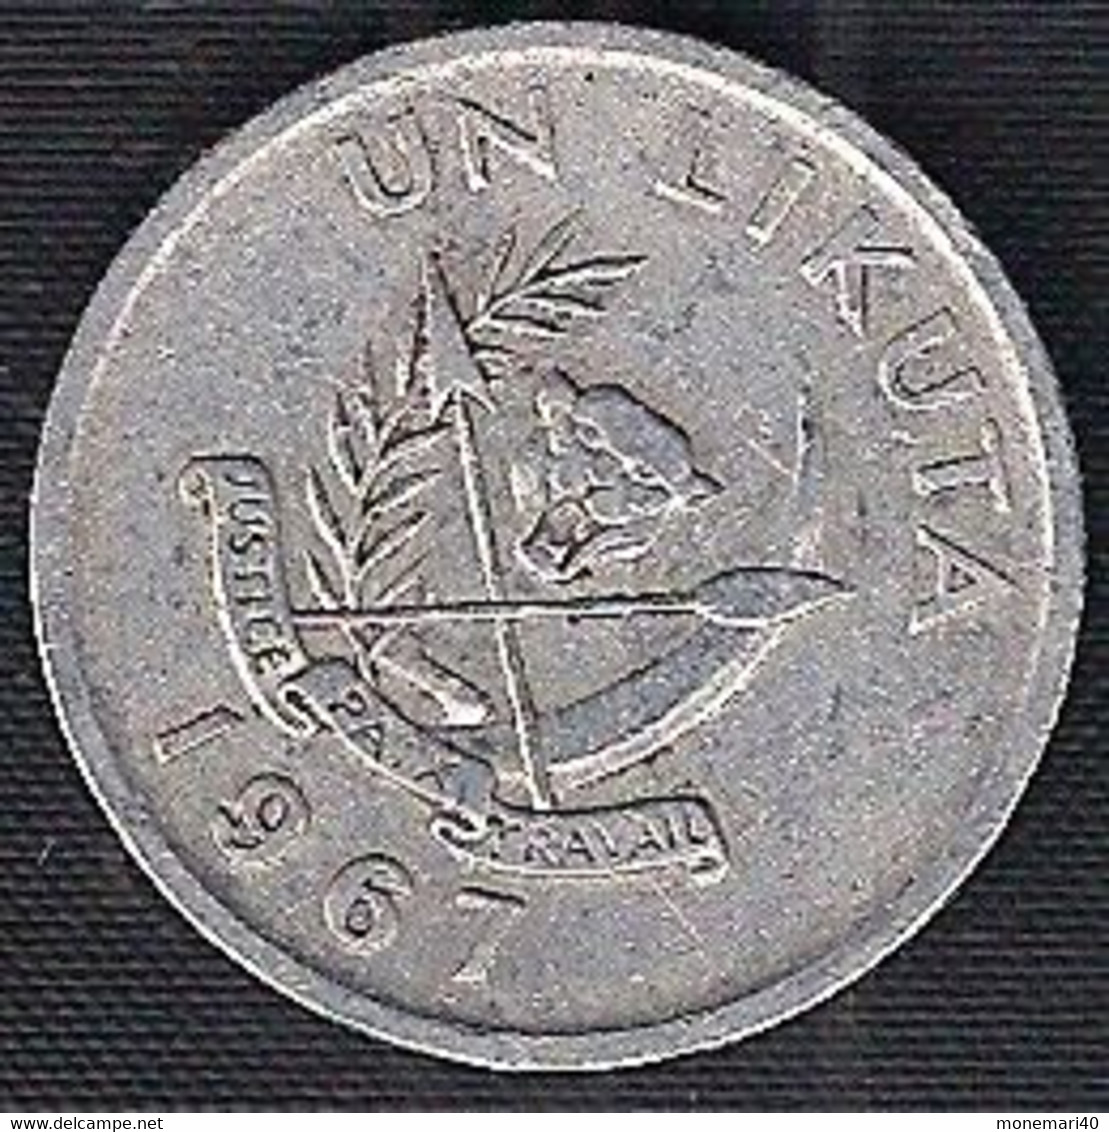 CONGO 1 LIKUTA - 1967 - Congo (República Democrática 1964-70)